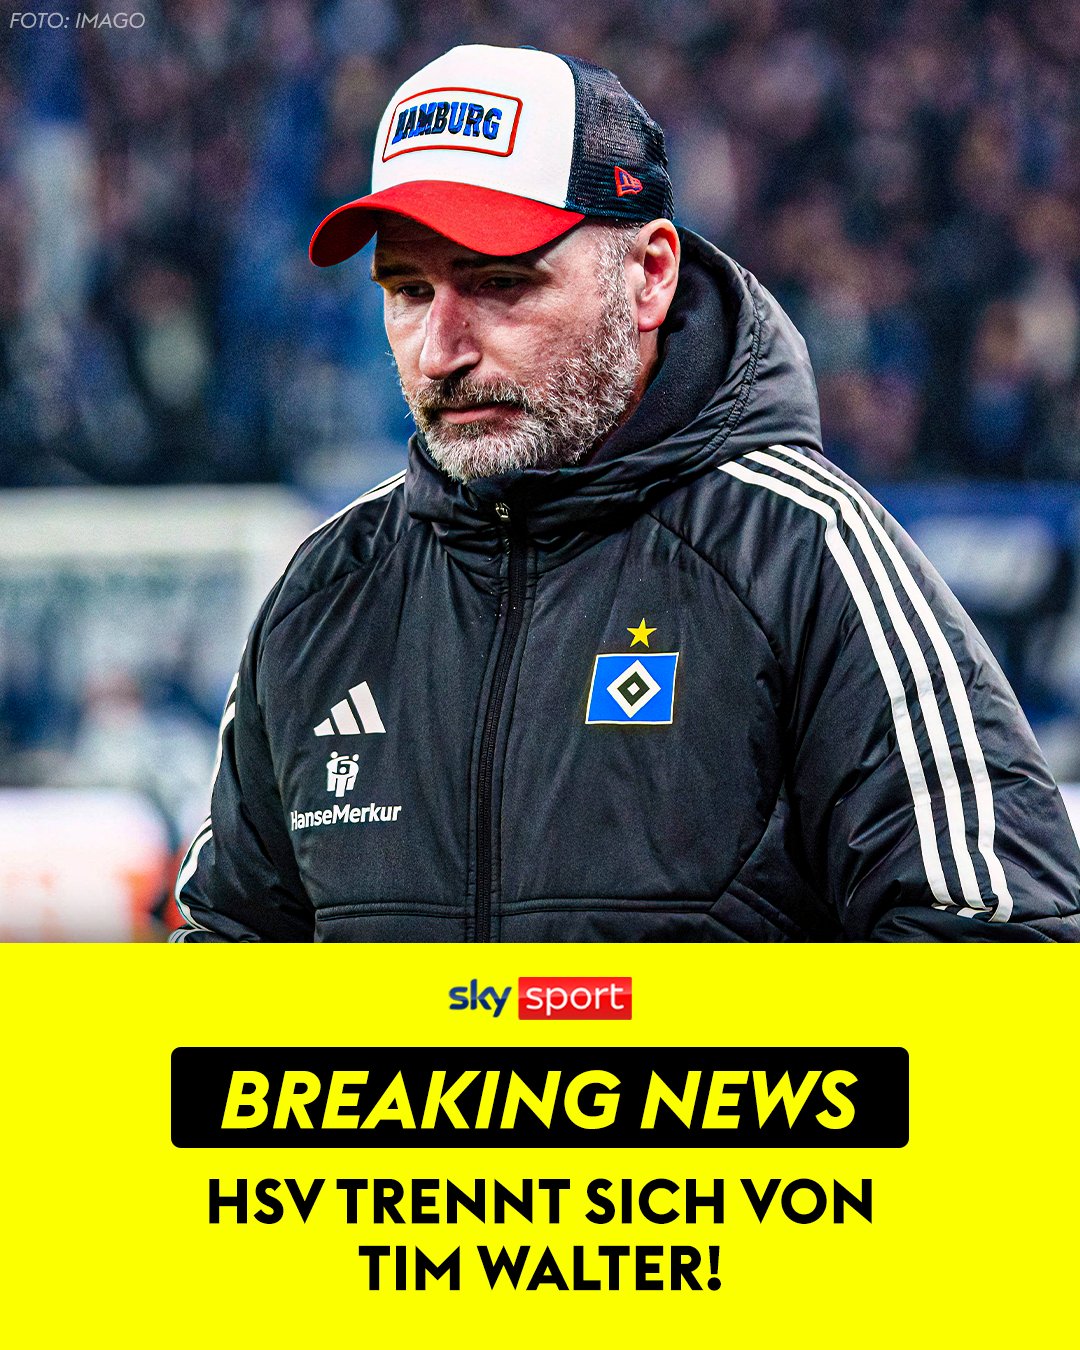 HSV trennt sich von Trainer Tim Walter in der 2. Bundesliga